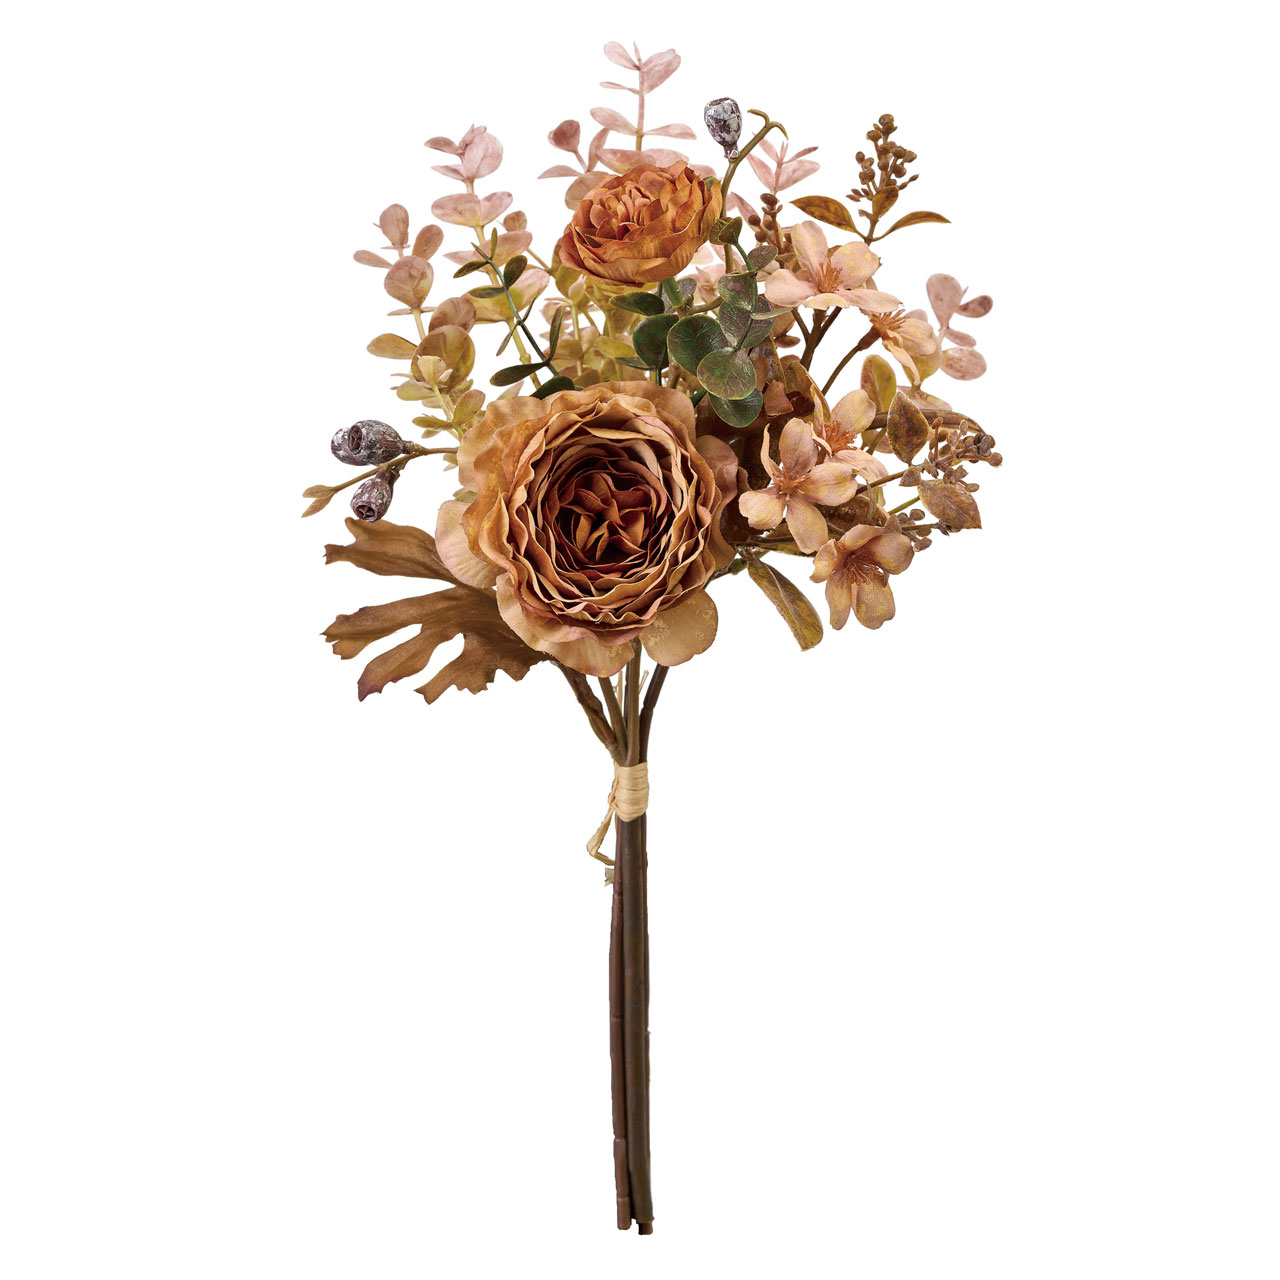 マイフラ】 通販/MAGIQ モナラナンキュラスブーケ ブラウン アーティフィシャルフラワー 造花 ラナンキュラス  FM000615-008(ブラウン): MAGIQ(アーティフィシャルフラワー 造花)/全国にMAGIQ、花器、花資材などをお届けします。